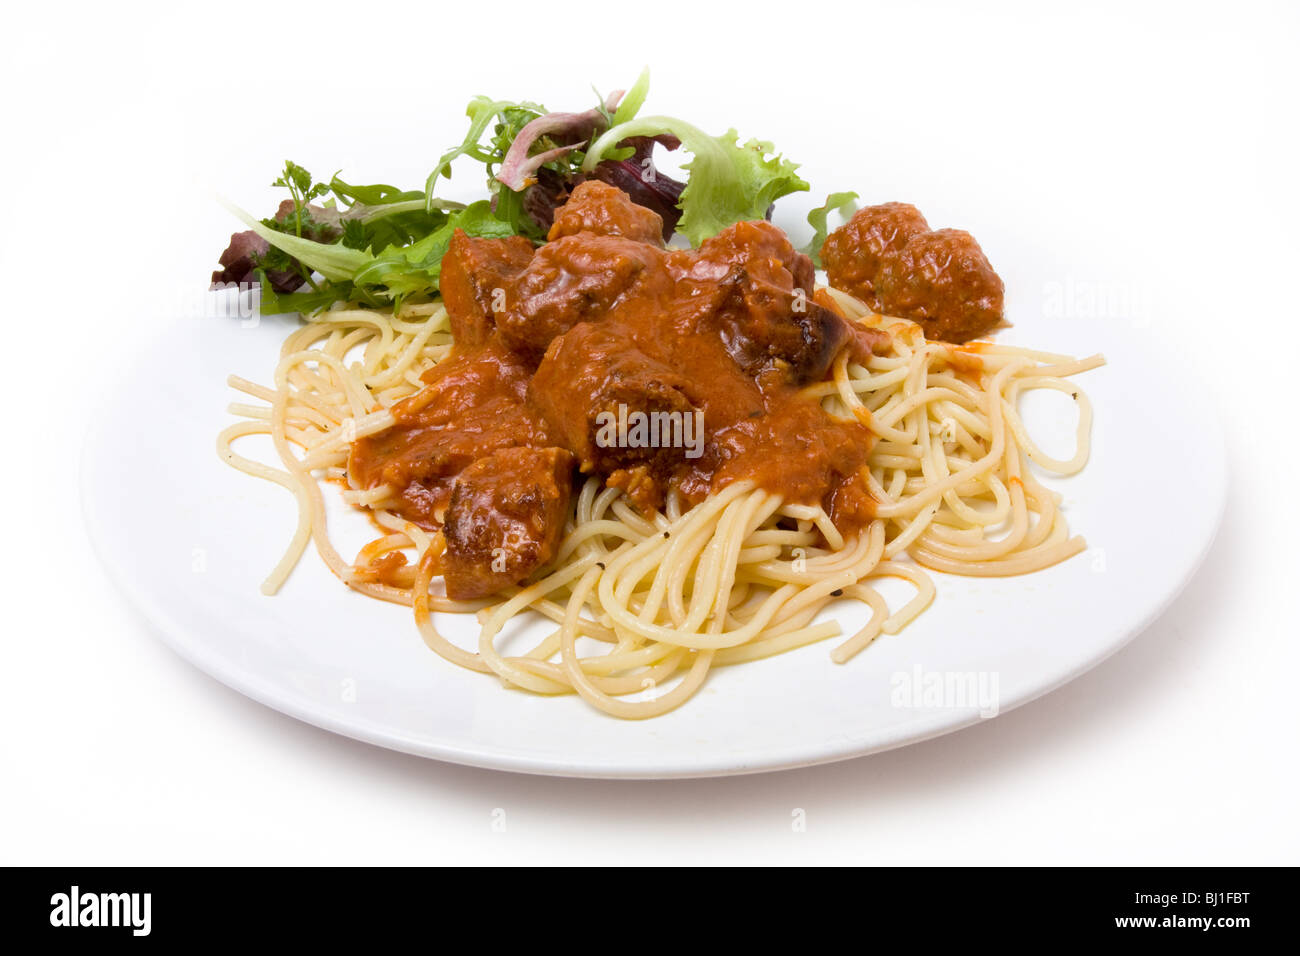 Zuhause gekocht Meatballs mit Spaghetti und Salat garniert Stockfoto